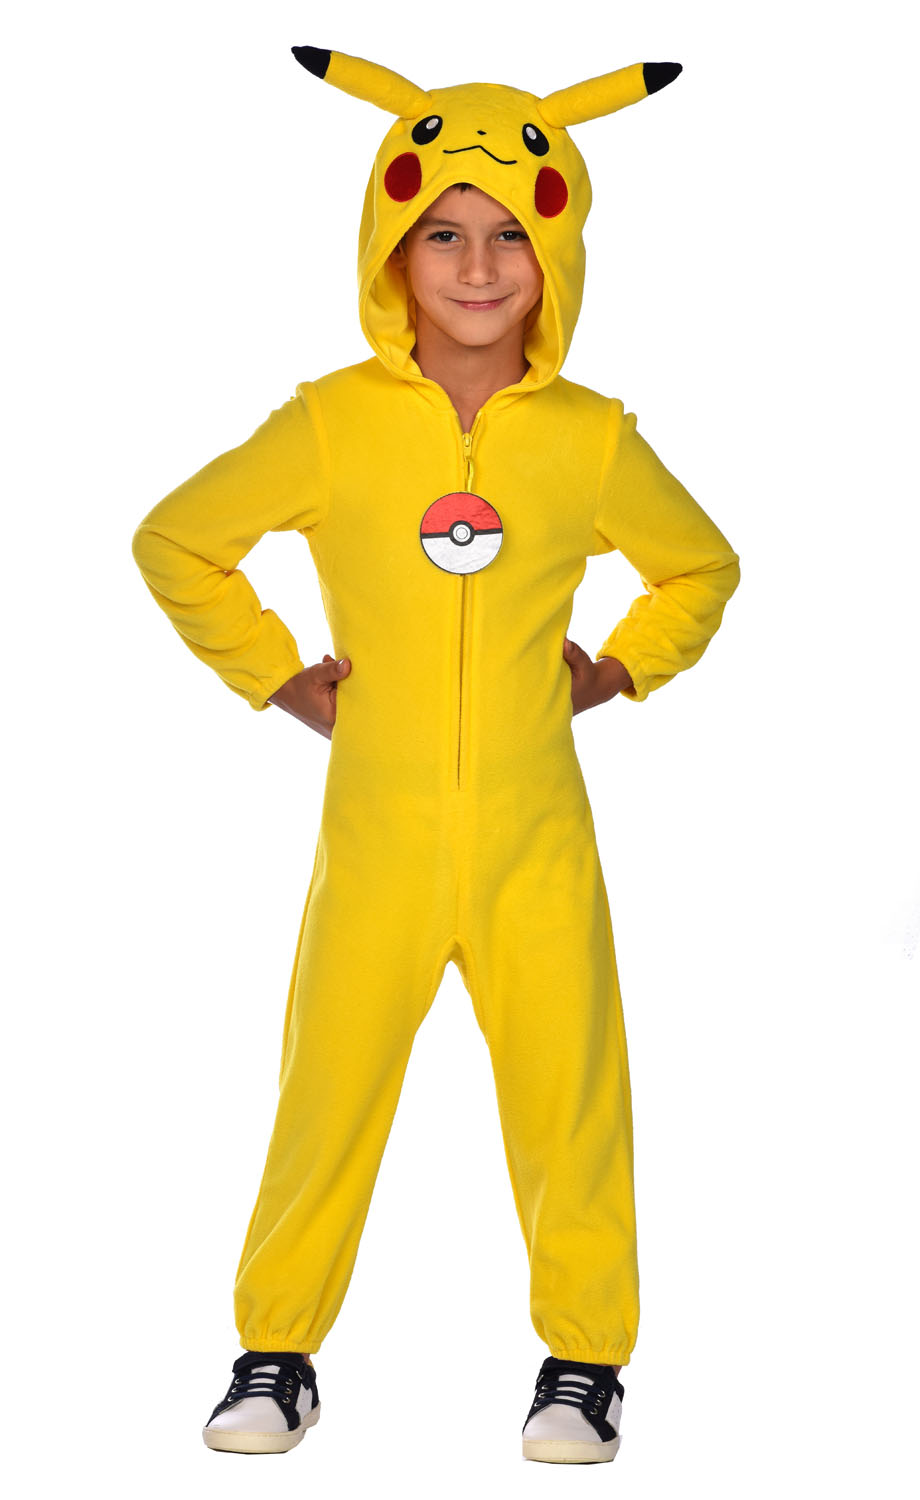 Kinderkostüm Pokémon Pikachu 4 - 6 Jahre gelb